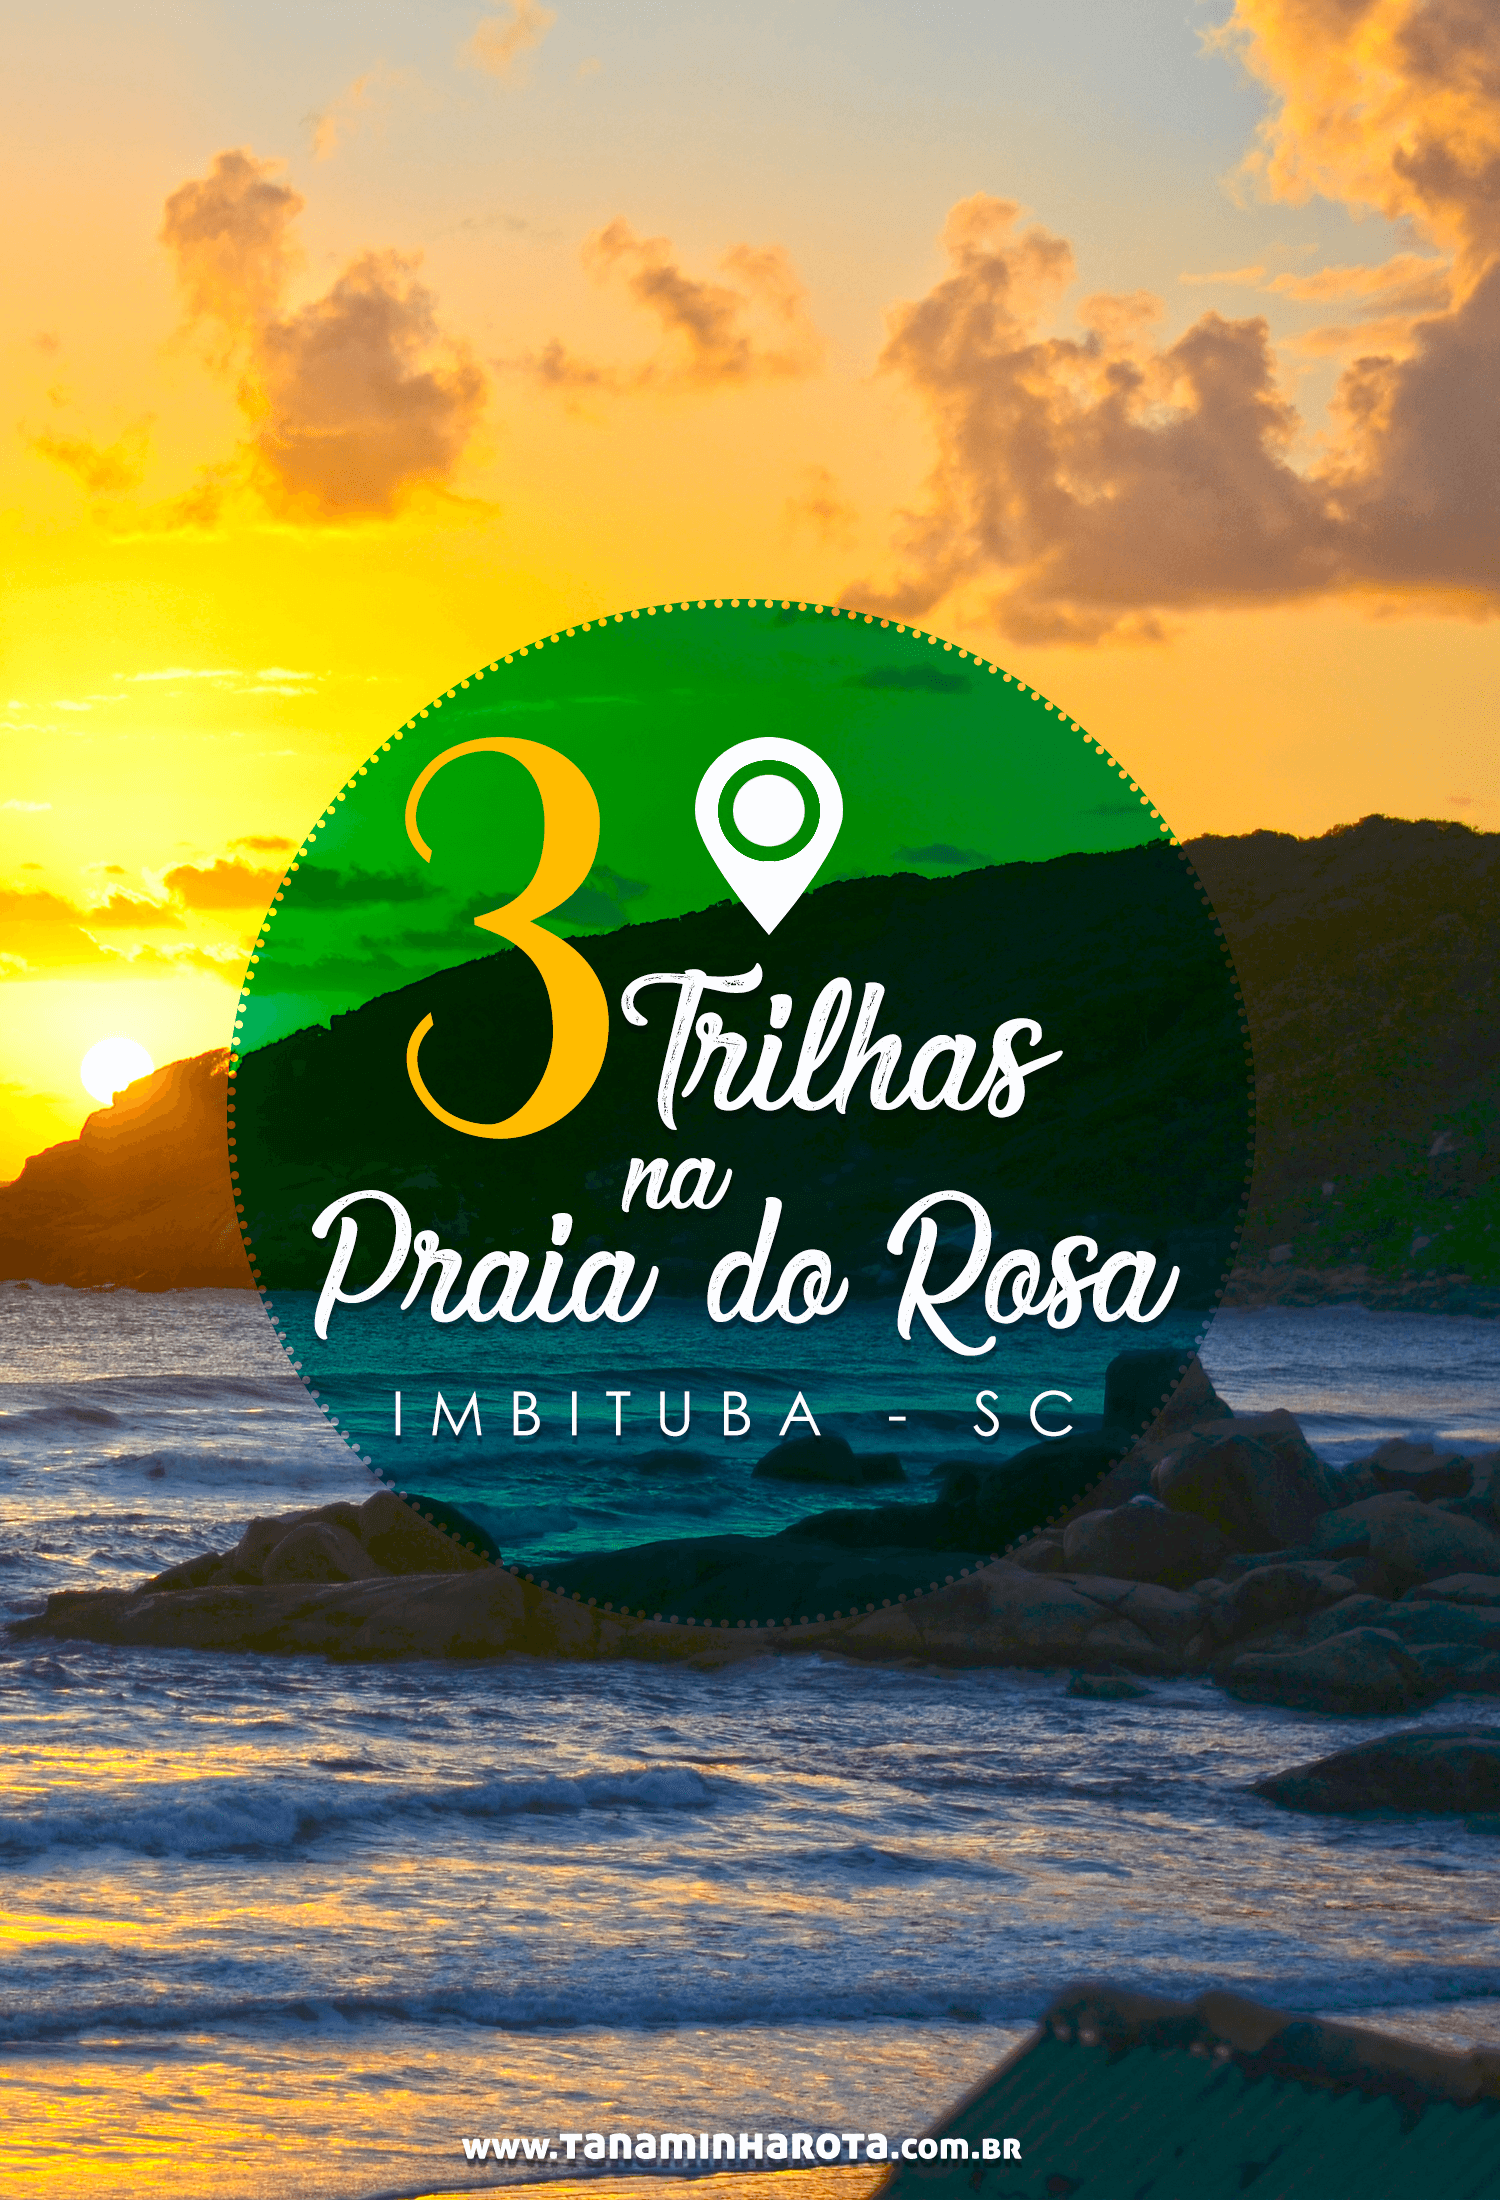 Descubra 3 das melhores trilhas da Praia do Rosa, em Santa Catarina, nesse post! Monte um roteiro cheia de aventuras nessa região de Imbituba!